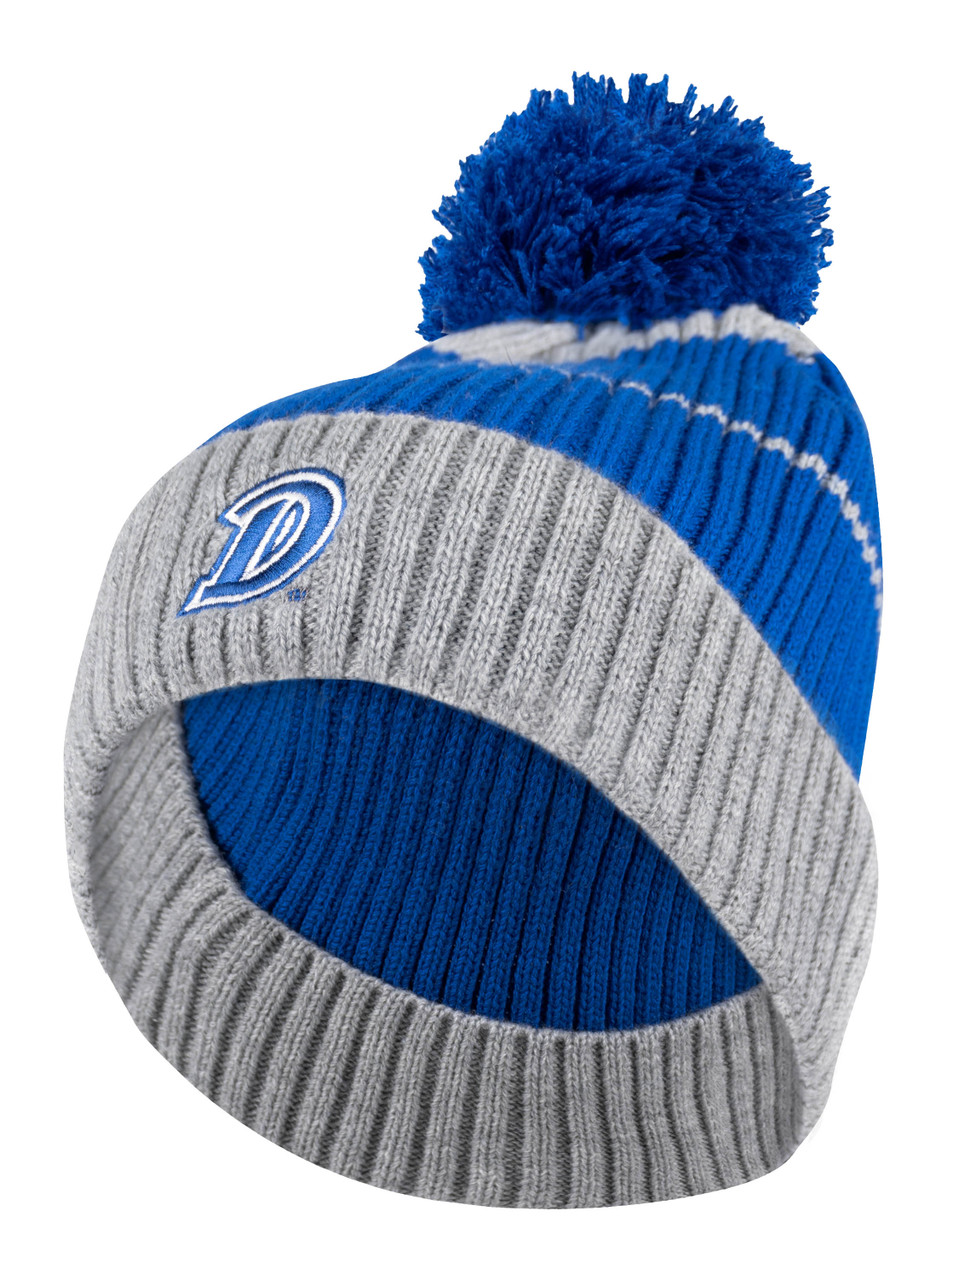 NBA Dallas Mavericks Adult Cuffed Winter Knit Hat Cap Beanie NEW!